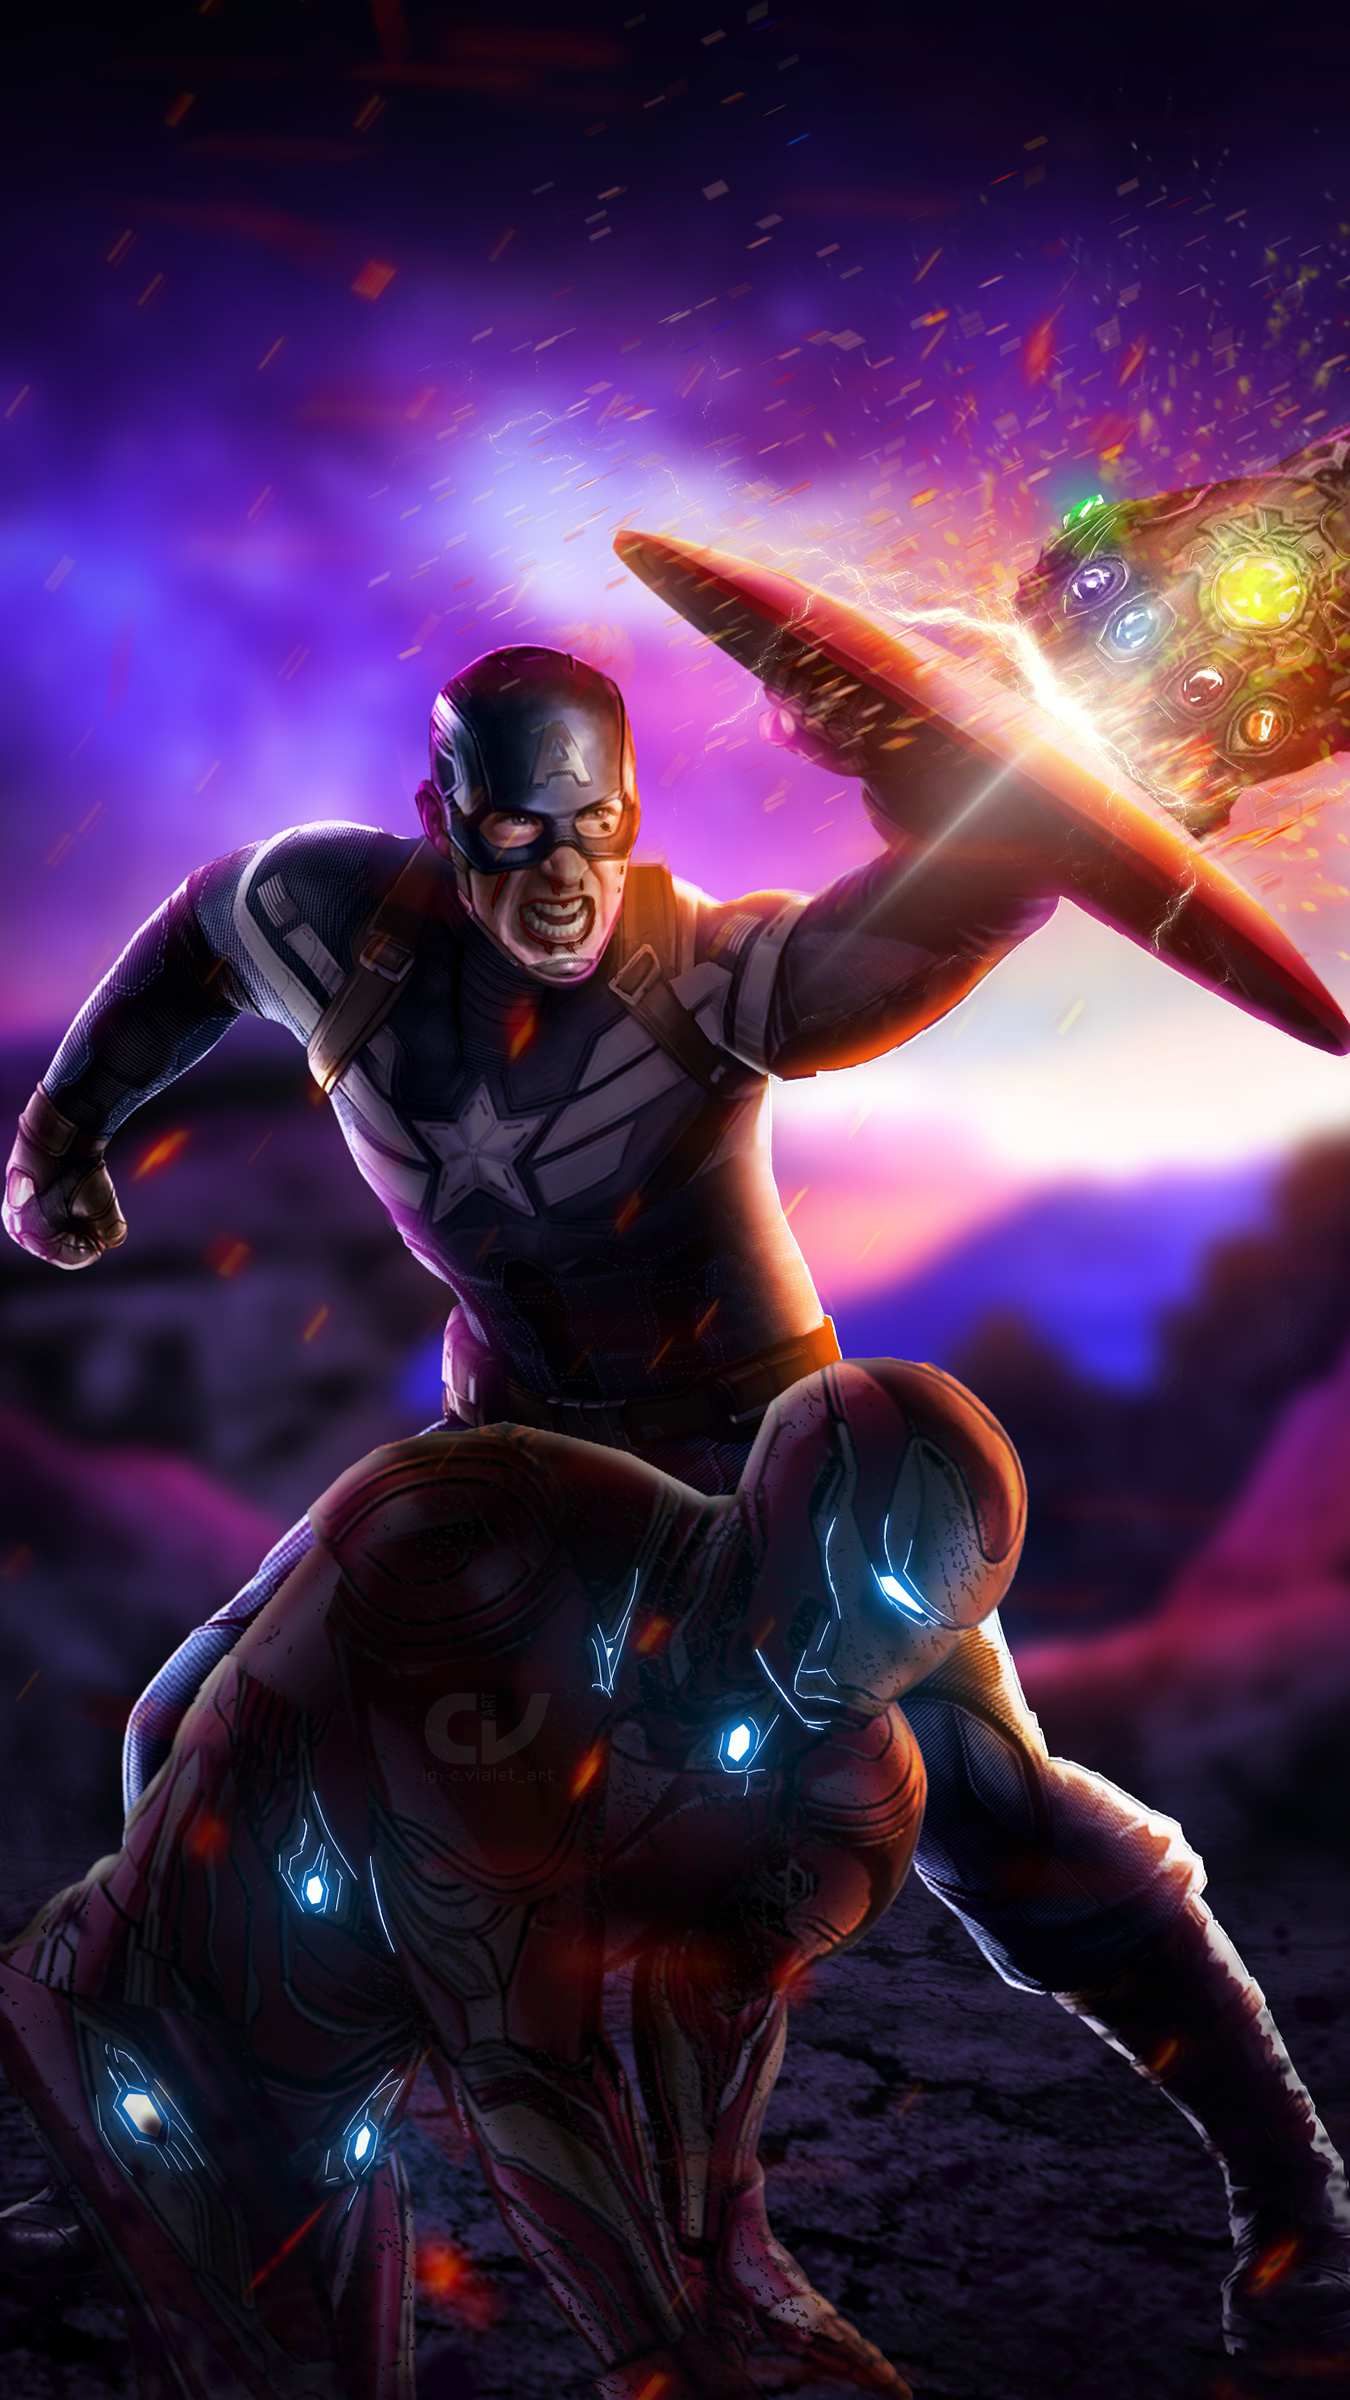 Captain America With Hammer Endgame - 1350x2400 Wallpaper 